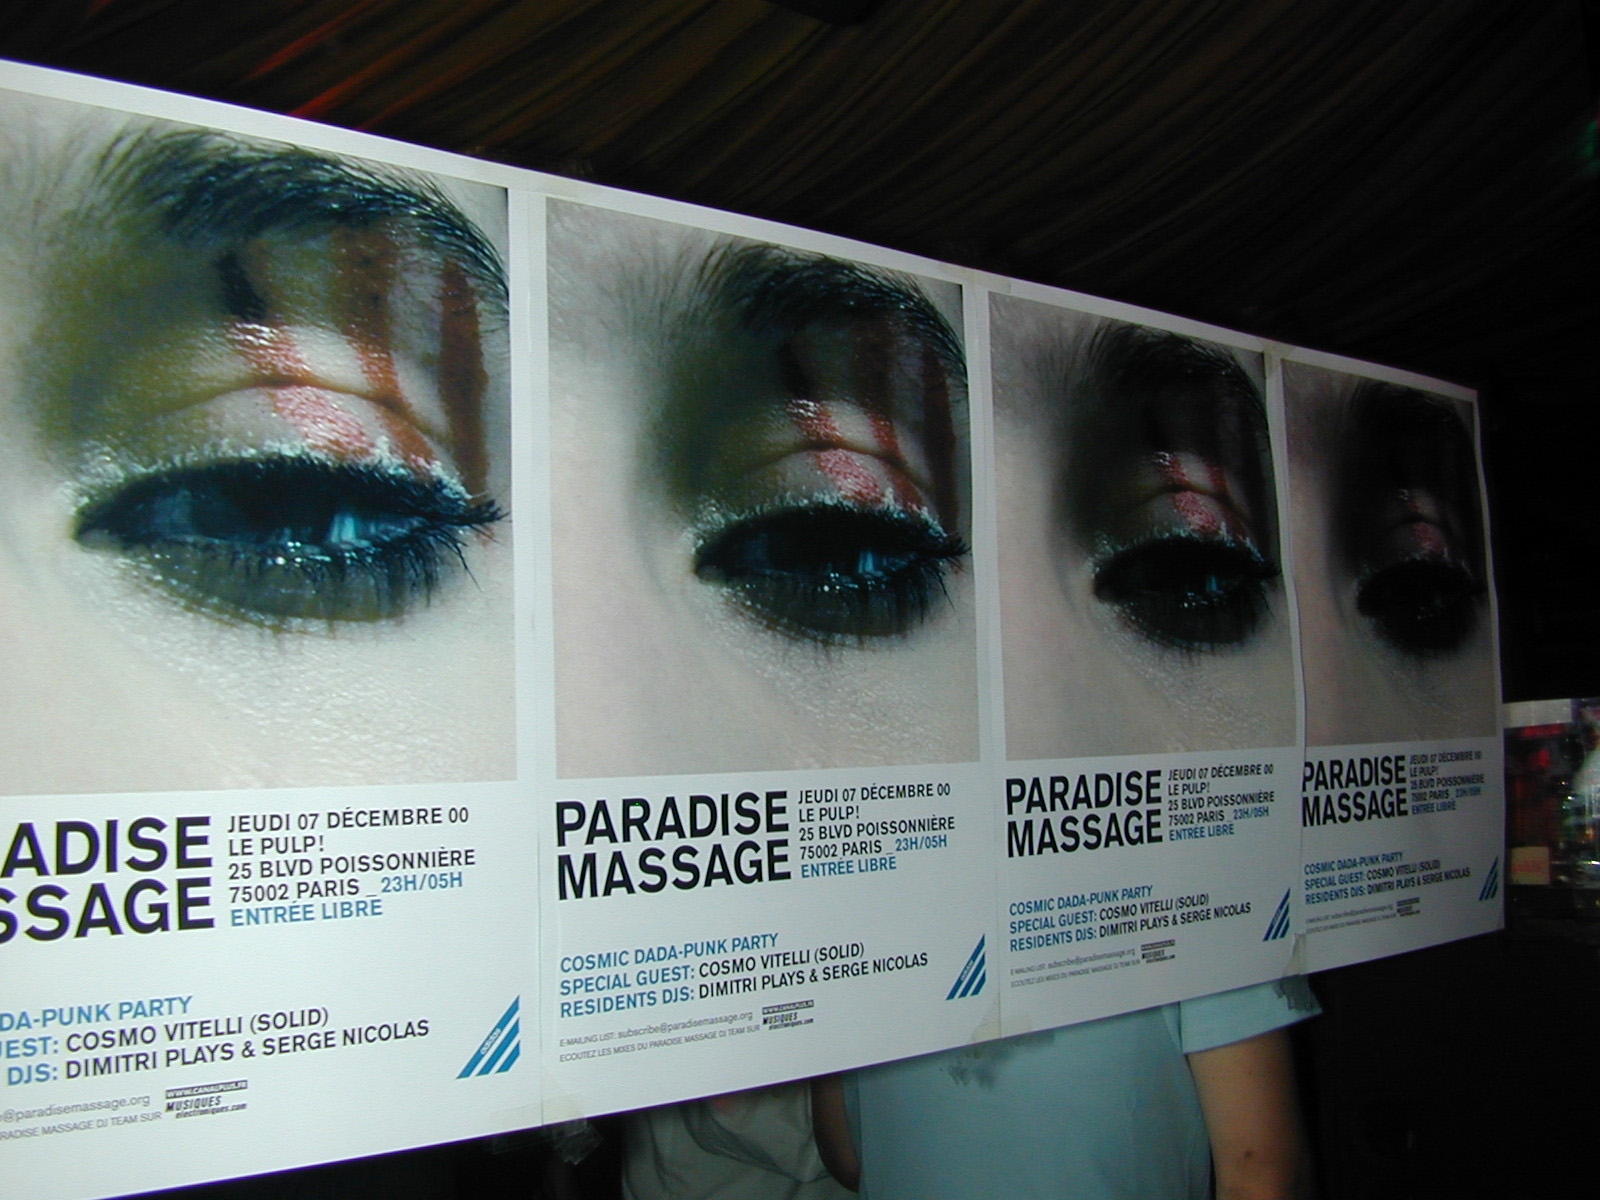 paradise massage